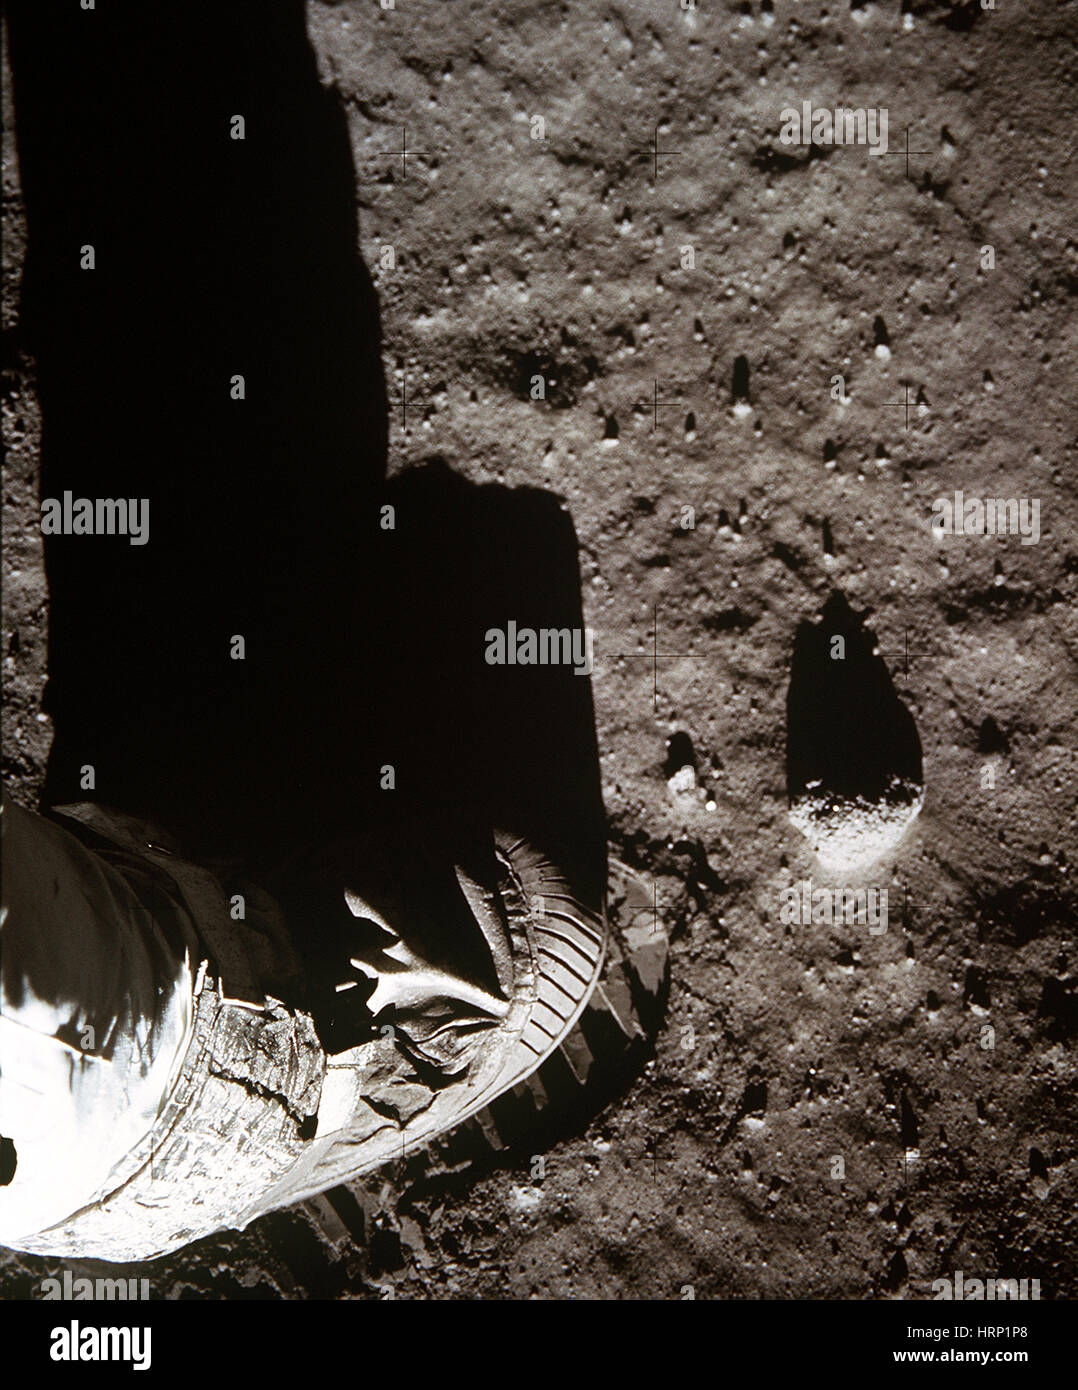 Apollo 11 Footprint on the Moon Stock Photo